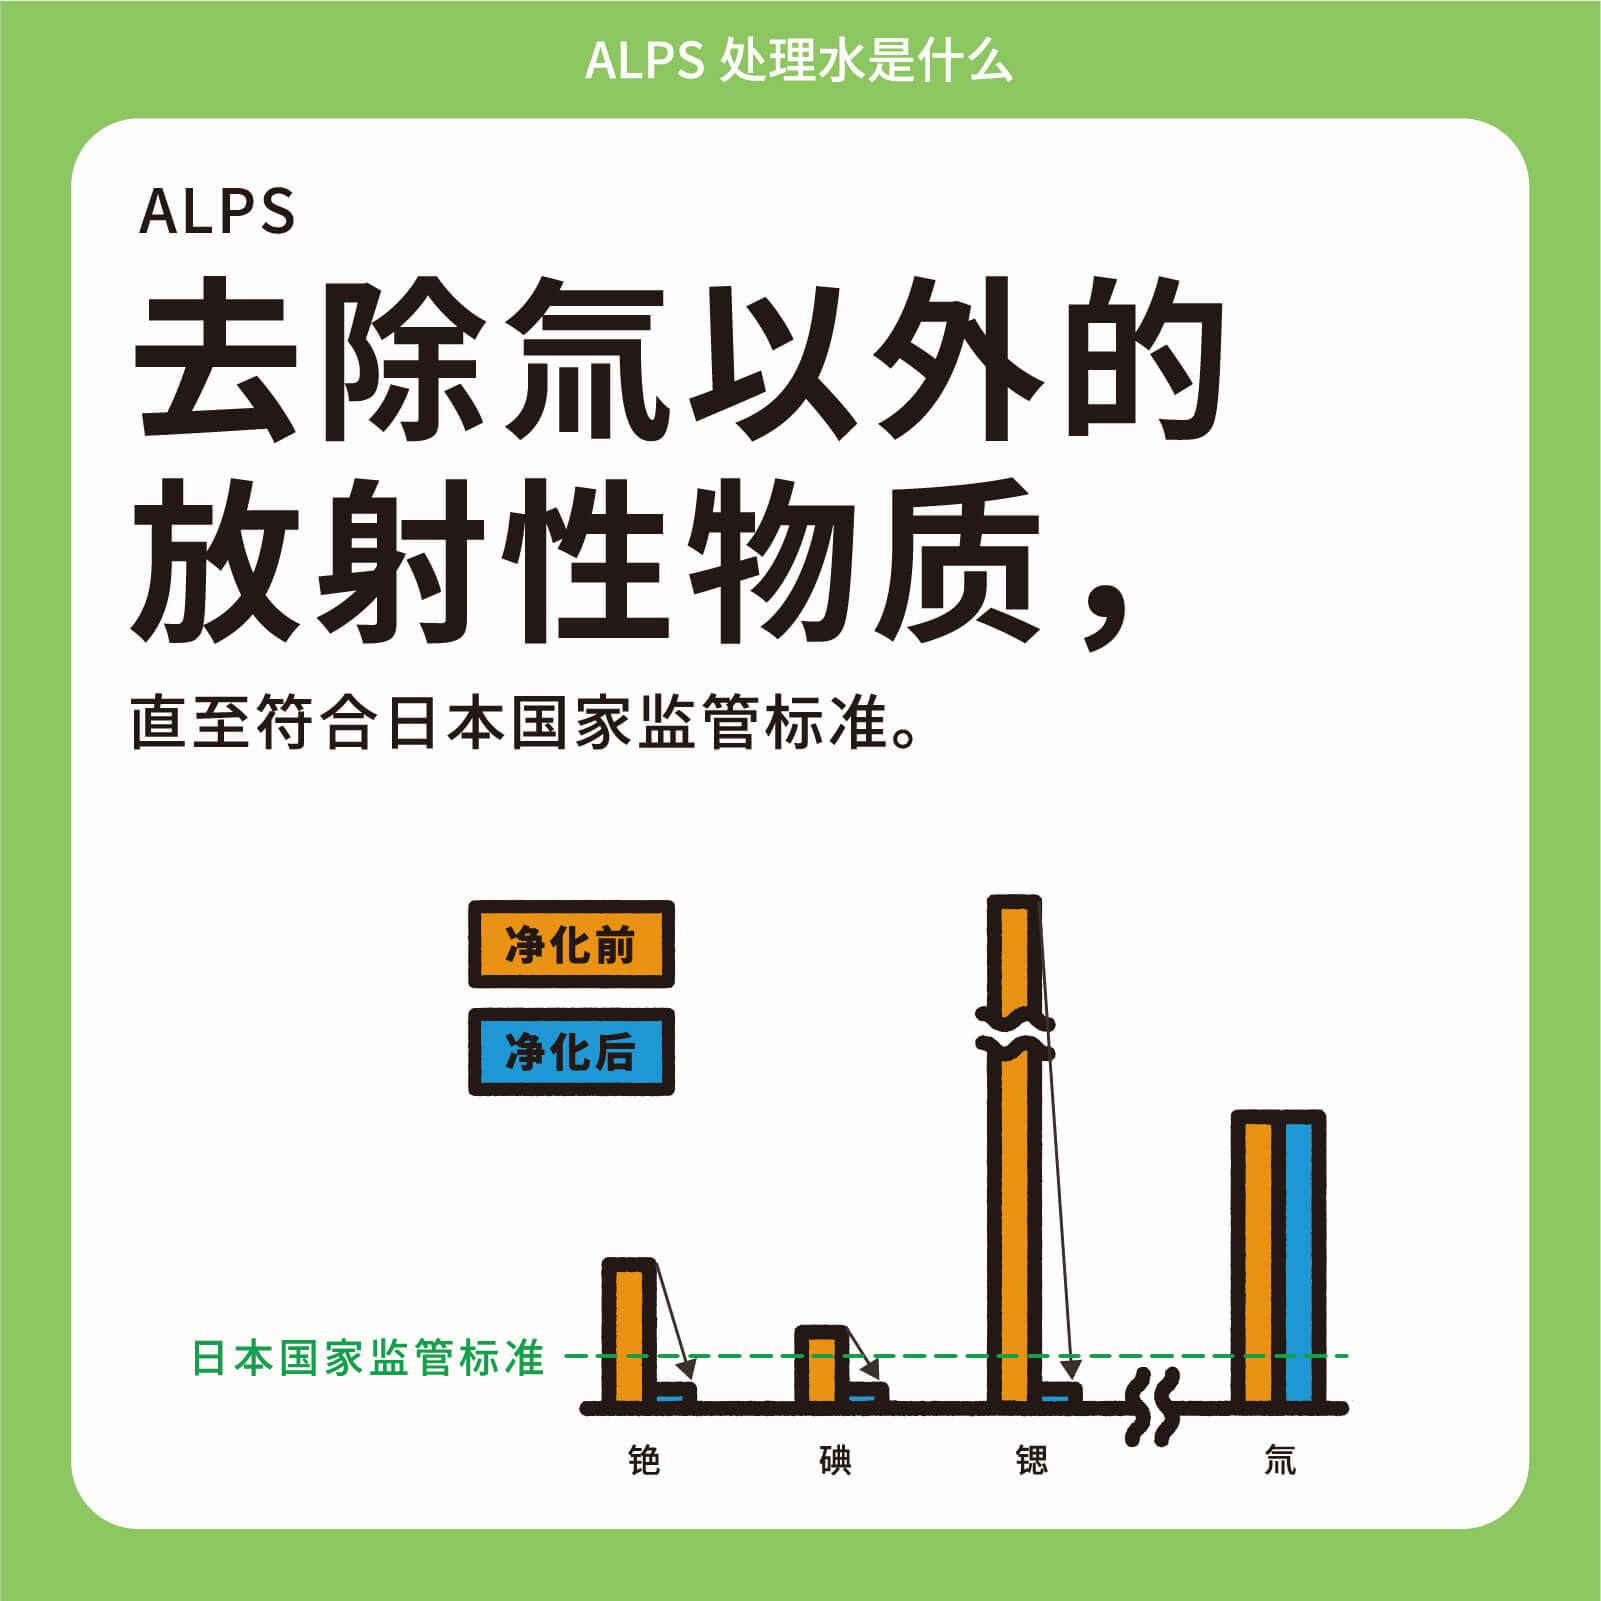 ALPS去除氚以外的放射性物质，直至符合日本国家监管标准。